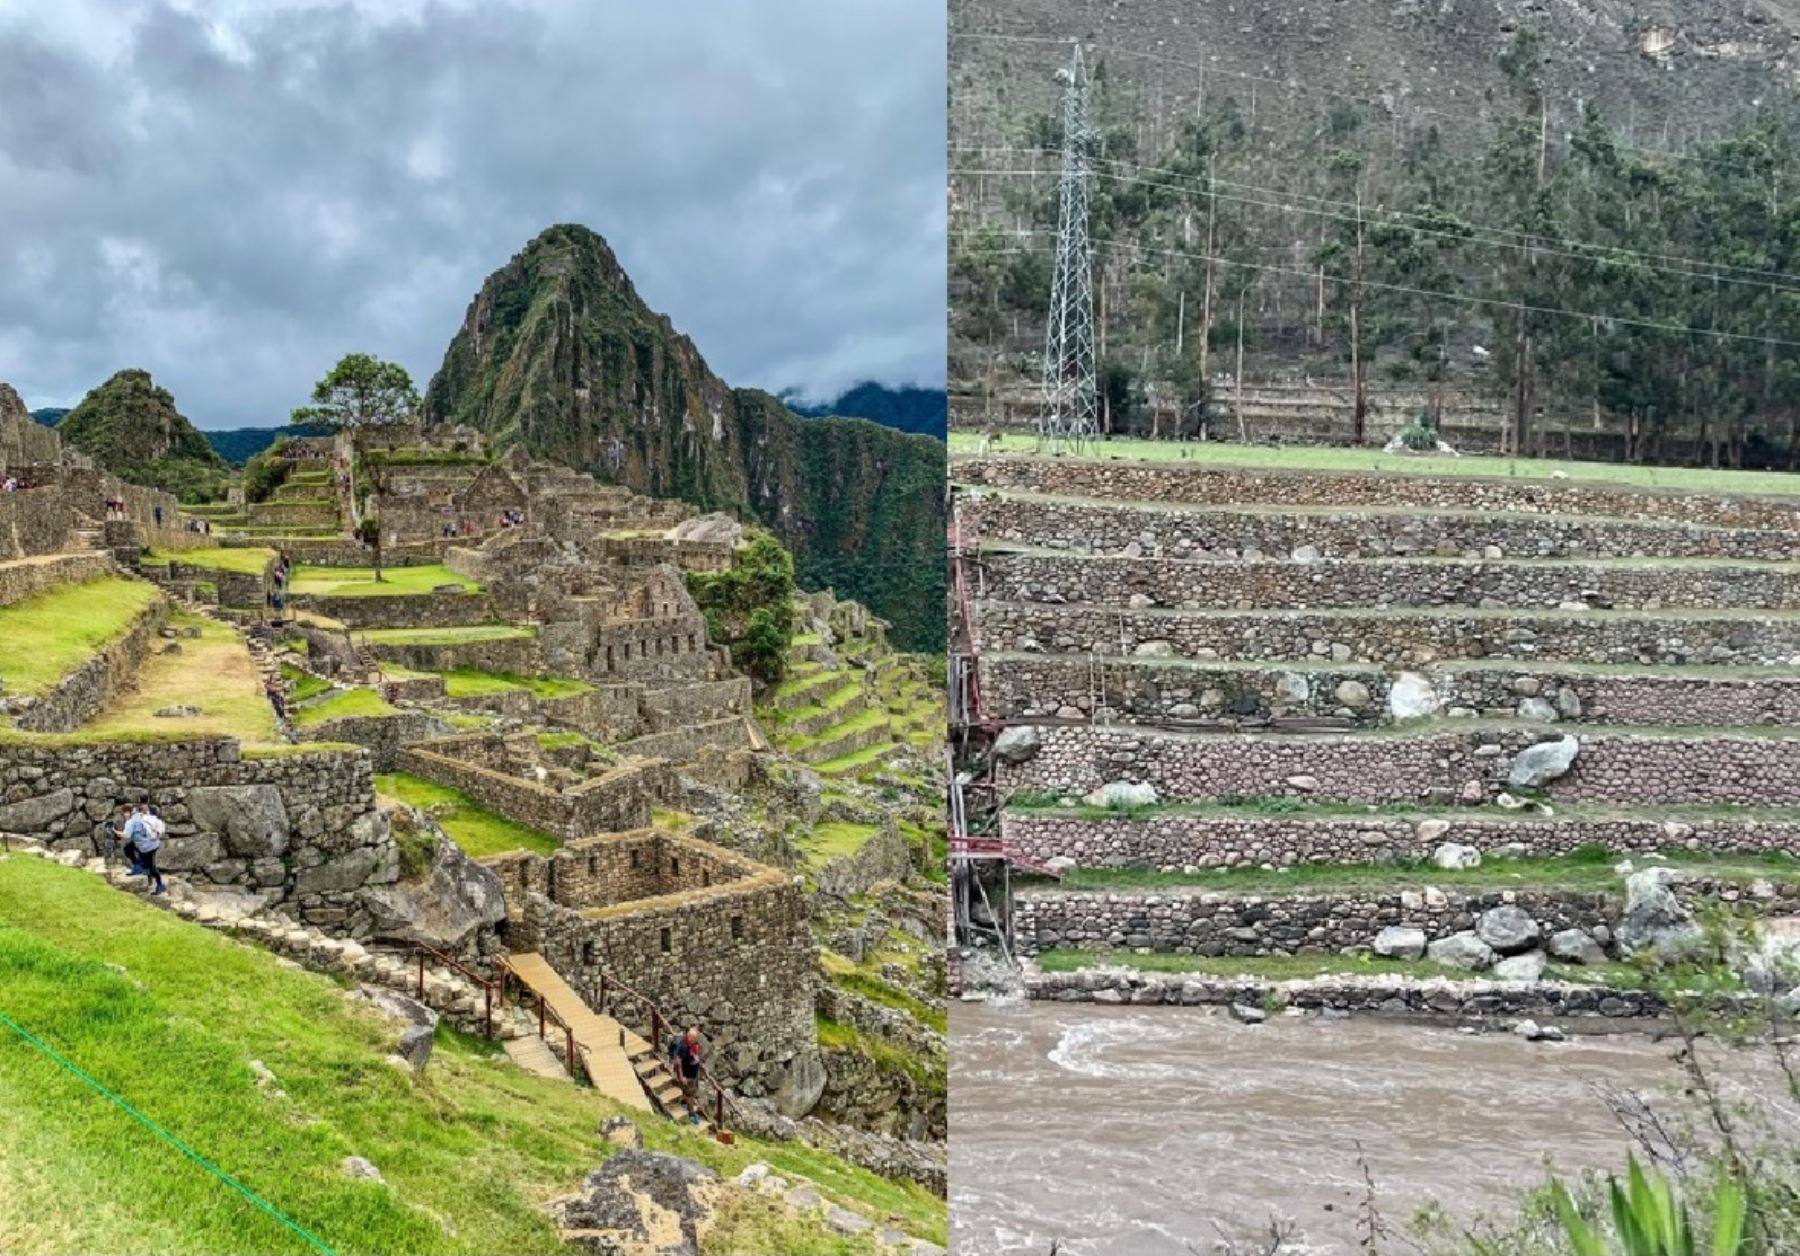 La nueva ruta turística que se implementará en el parque arqueológico Machu Picchu incluirá 15 sitios arqueológicos. ANDINA/Percy Hurtado Santillán